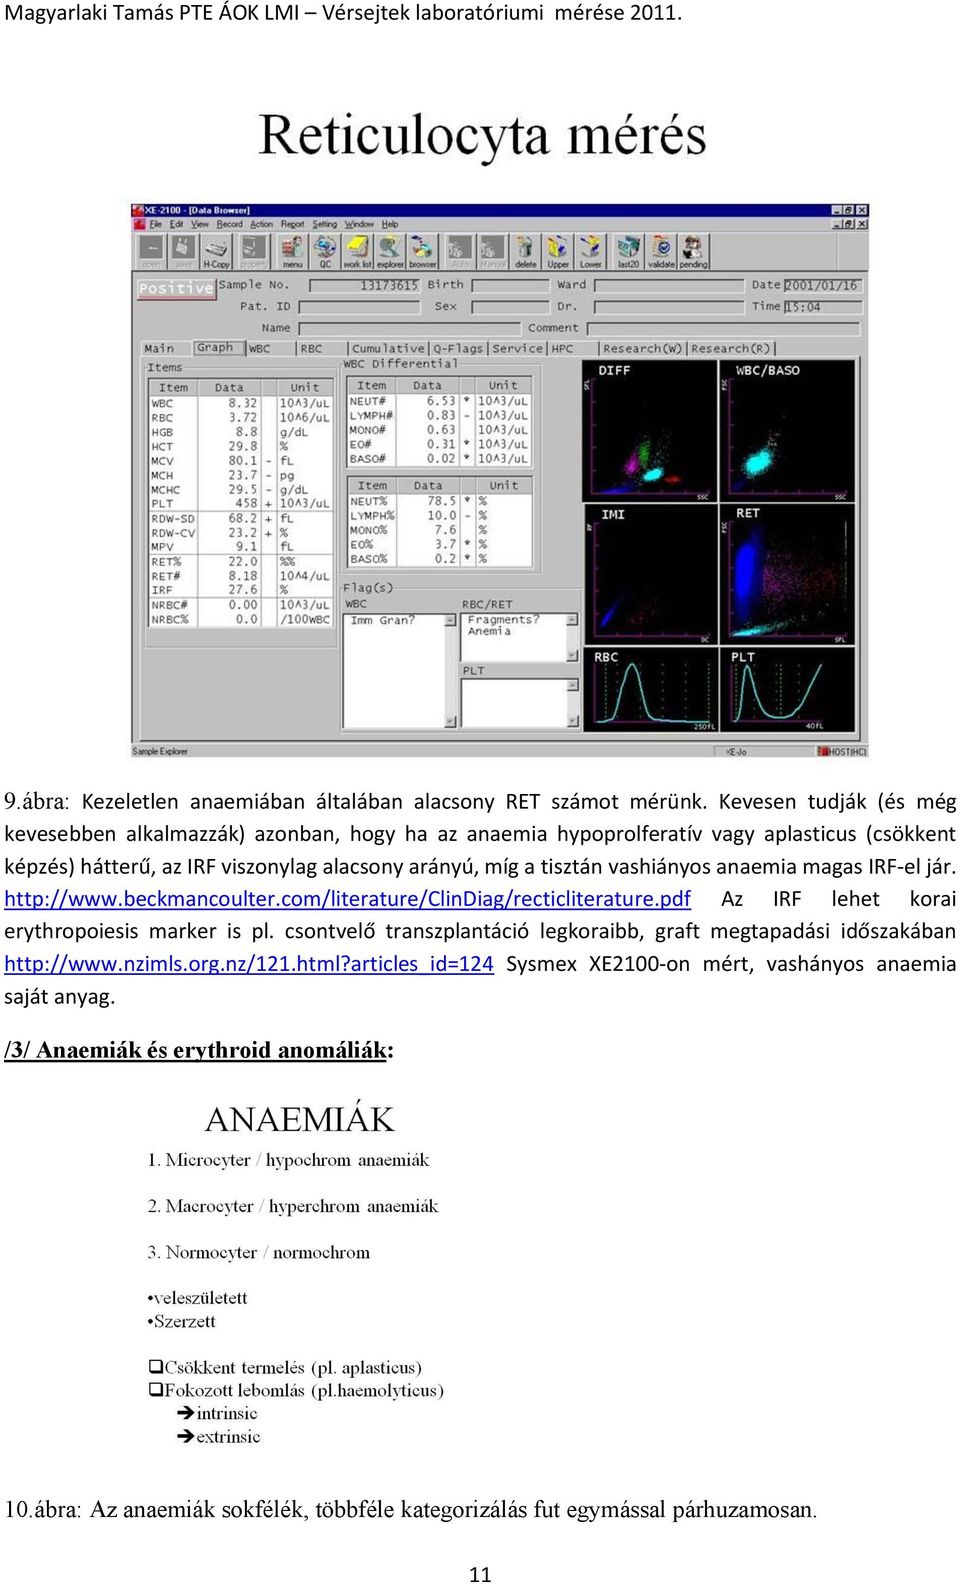 tisztán vashiányos anaemia magas IRF-el jár. http://www.beckmancoulter.com/literature/clindiag/recticliterature.pdf Az IRF lehet korai erythropoiesis marker is pl.